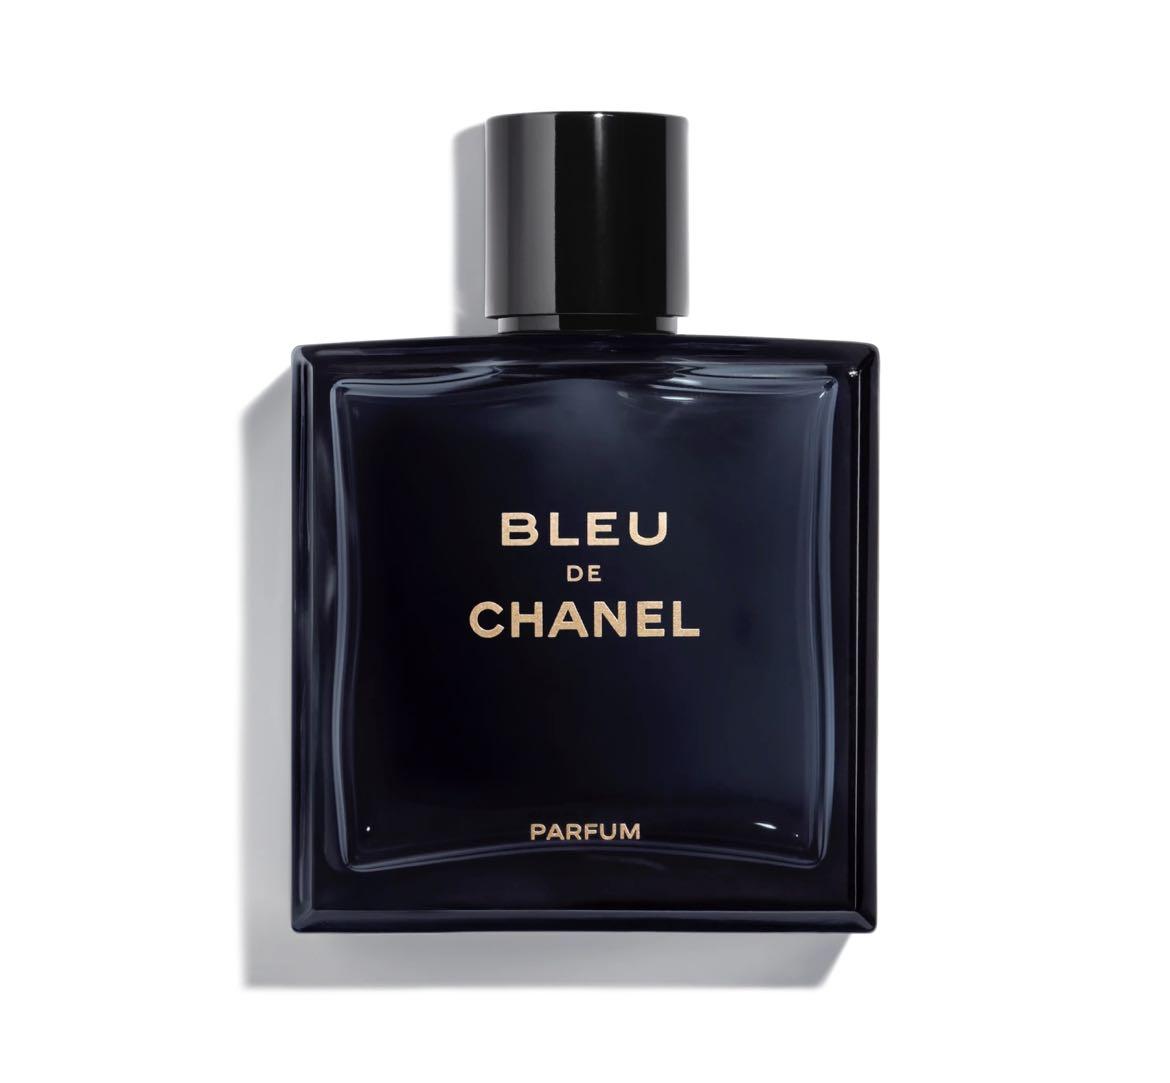 Bleu de Chanel Parfum 50ml